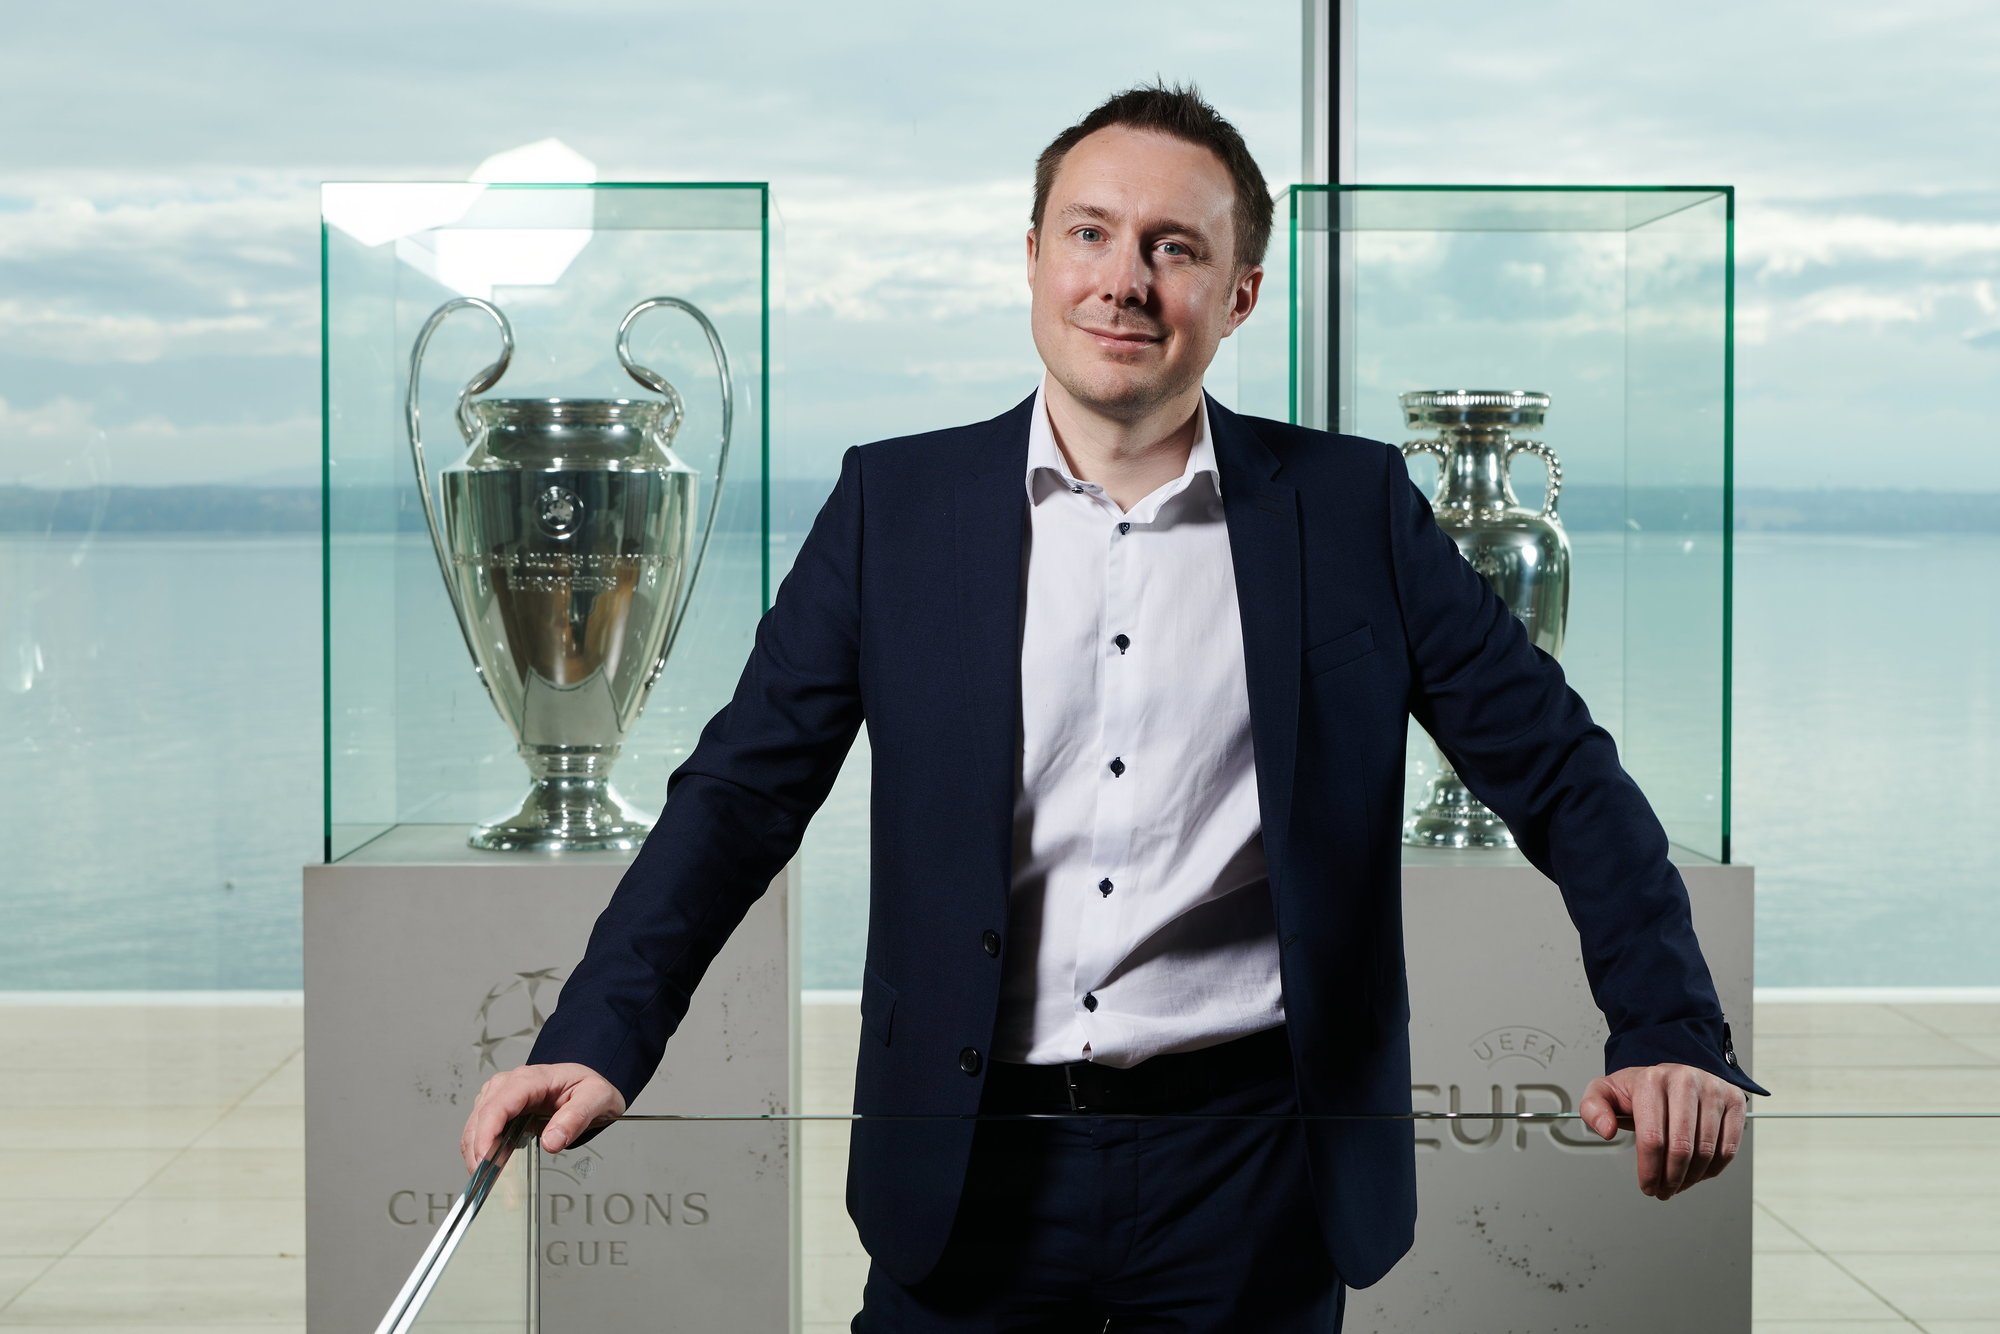 Responsable de l'UEFA Academy, Thomas Junod travaille à l'UEFA depuis 14 ans.